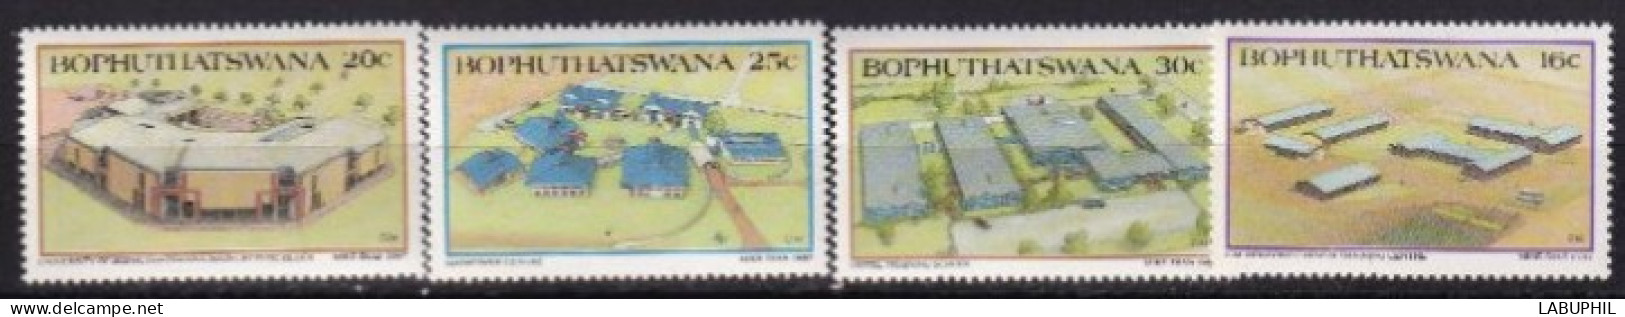 BOPHUYHATSWANA MNH 1987 - Bofutatsuana